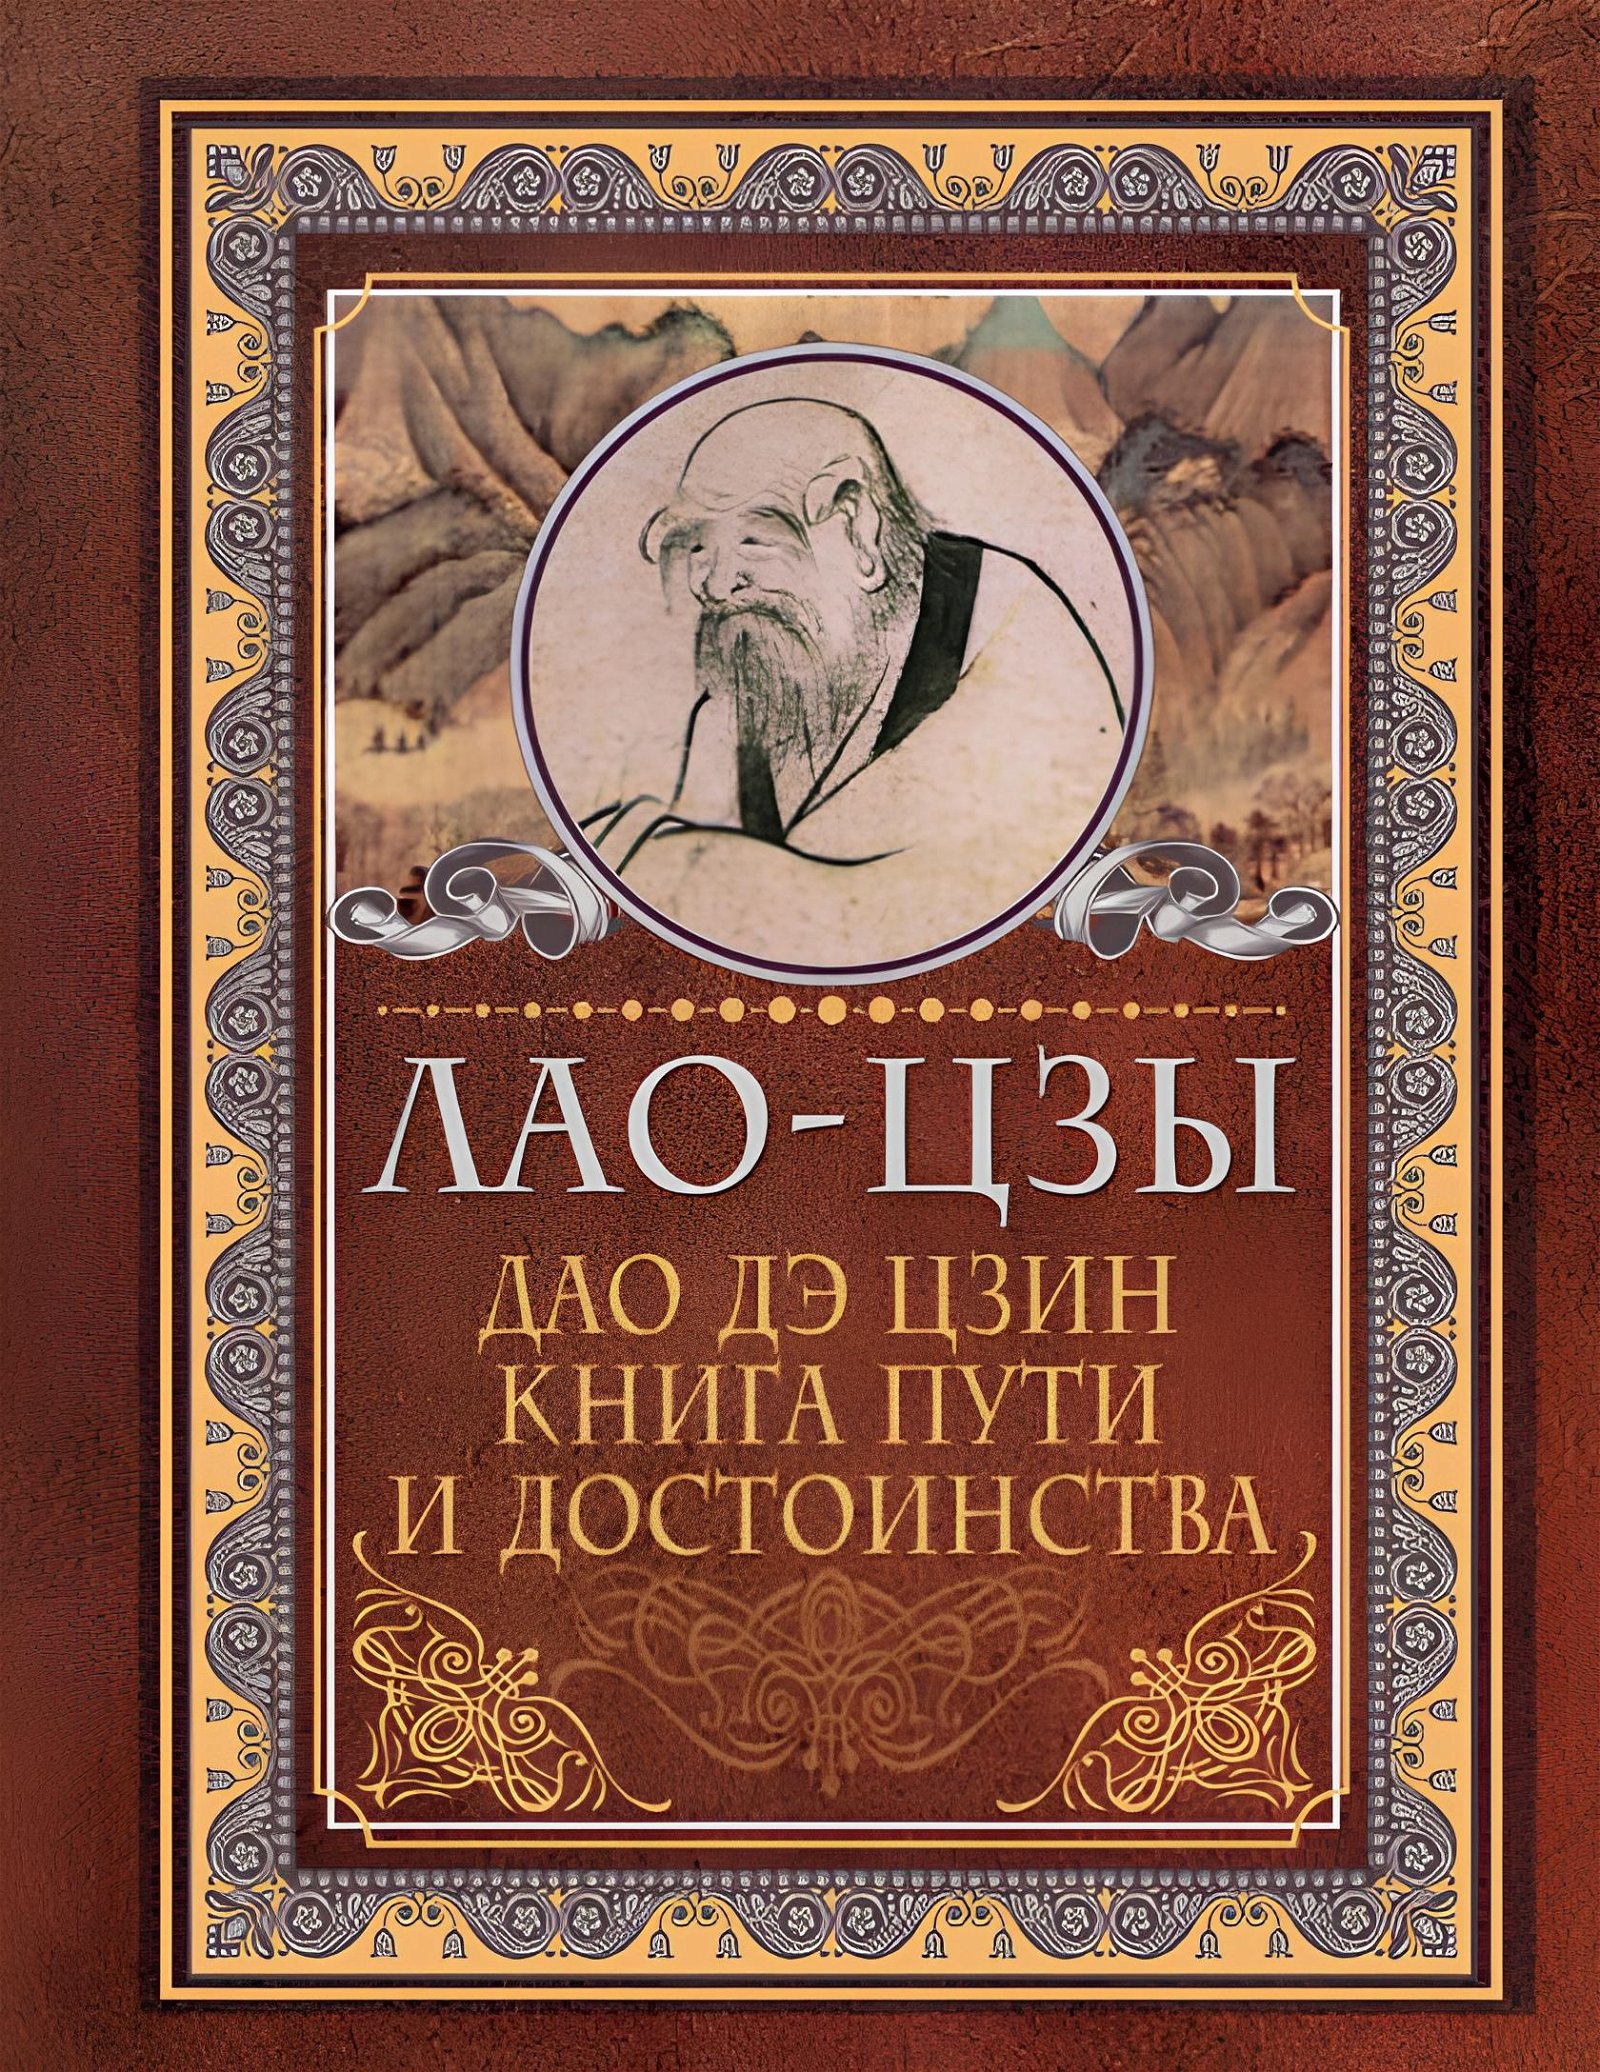 Дао-дэ цзин. Книга пути и достоинства (2020). 